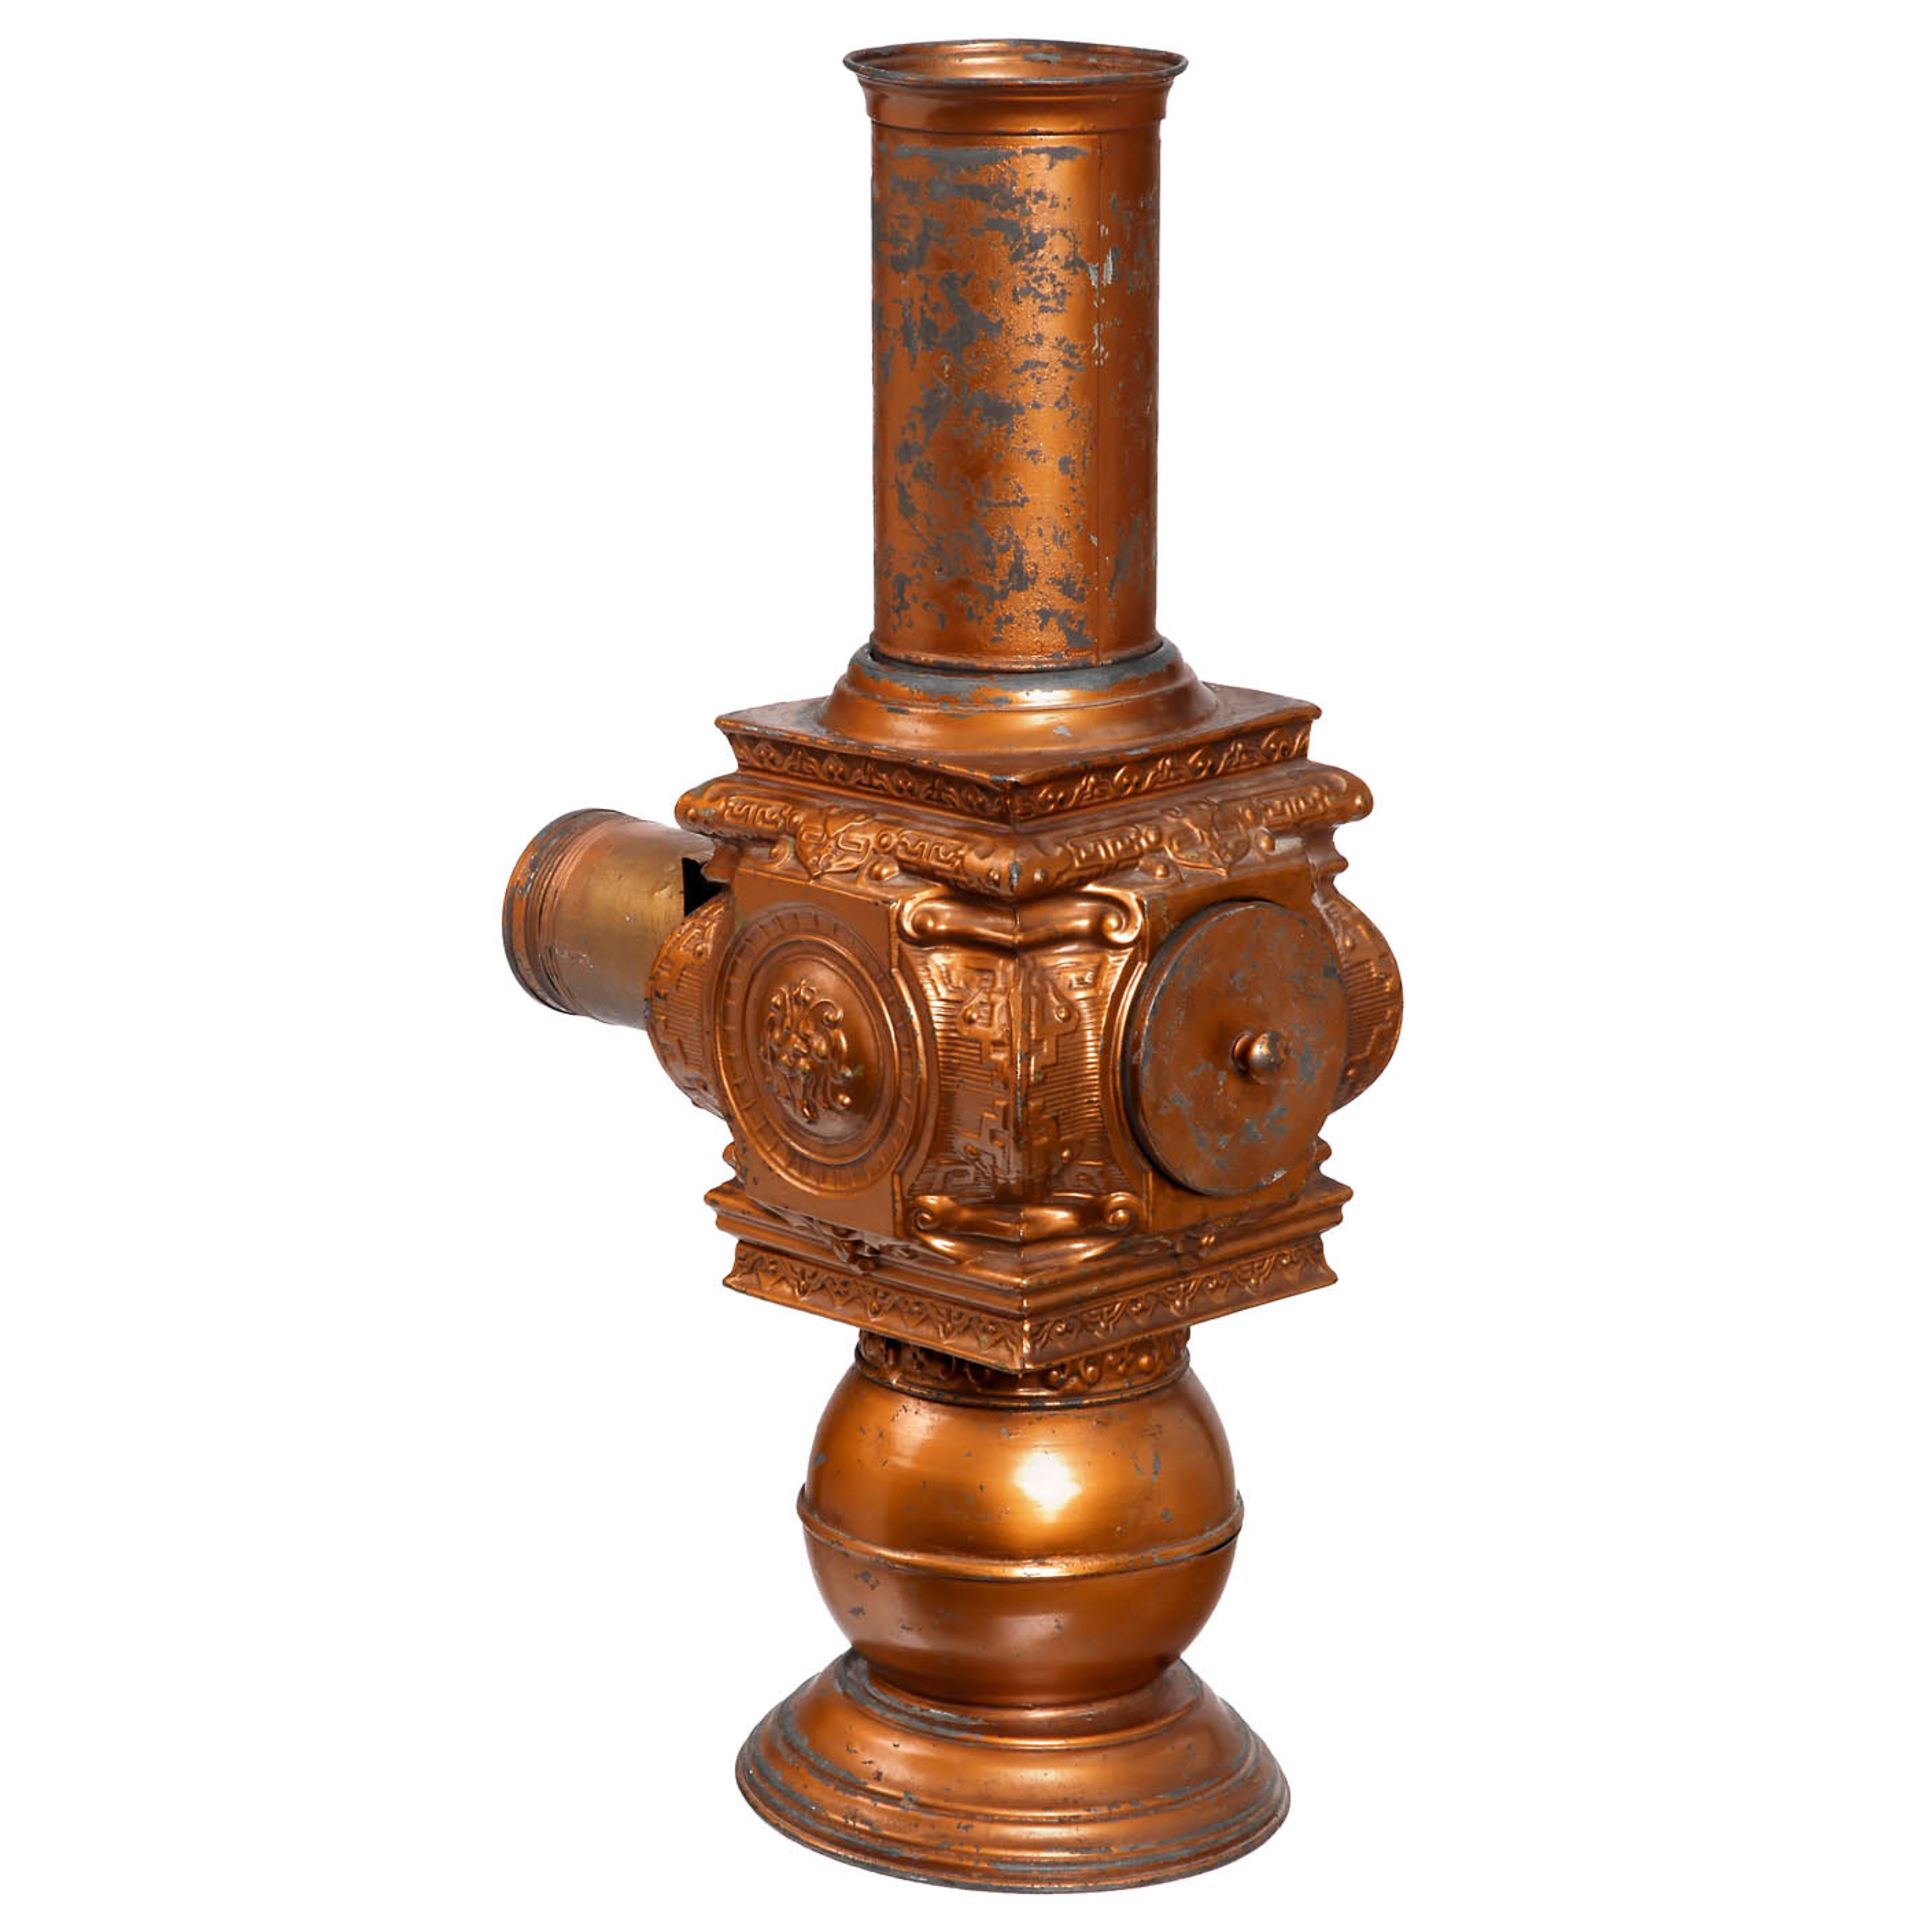 Copper-Colored "Lampadophore" Magic Lantern, c. 1893 - Bild 2 aus 2